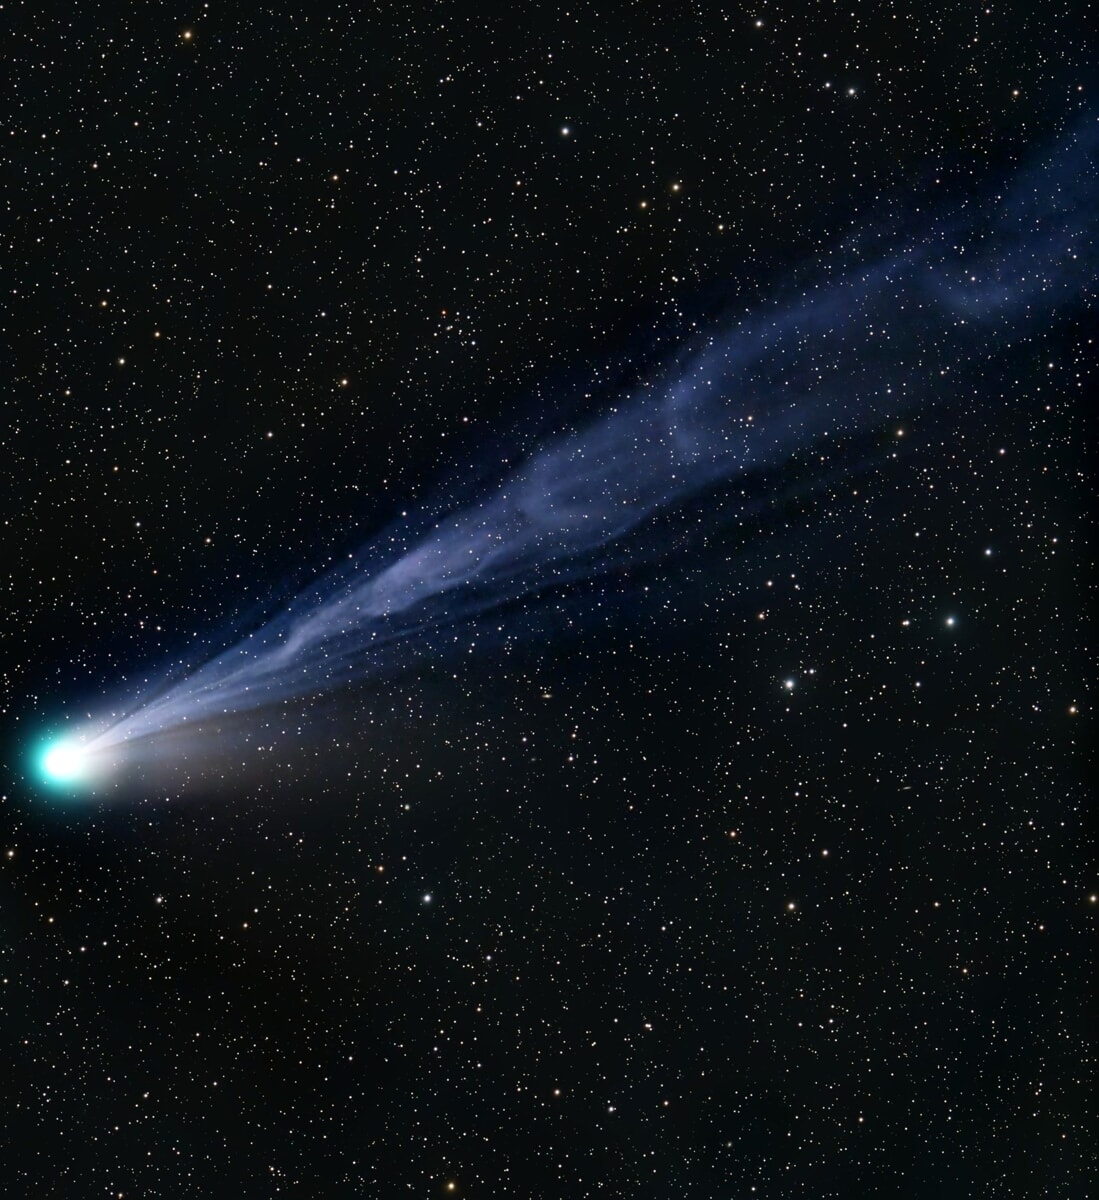 La Cometa 12P/Pons-Brooks sempre più luminosa: ecco dove e quando ammirarla